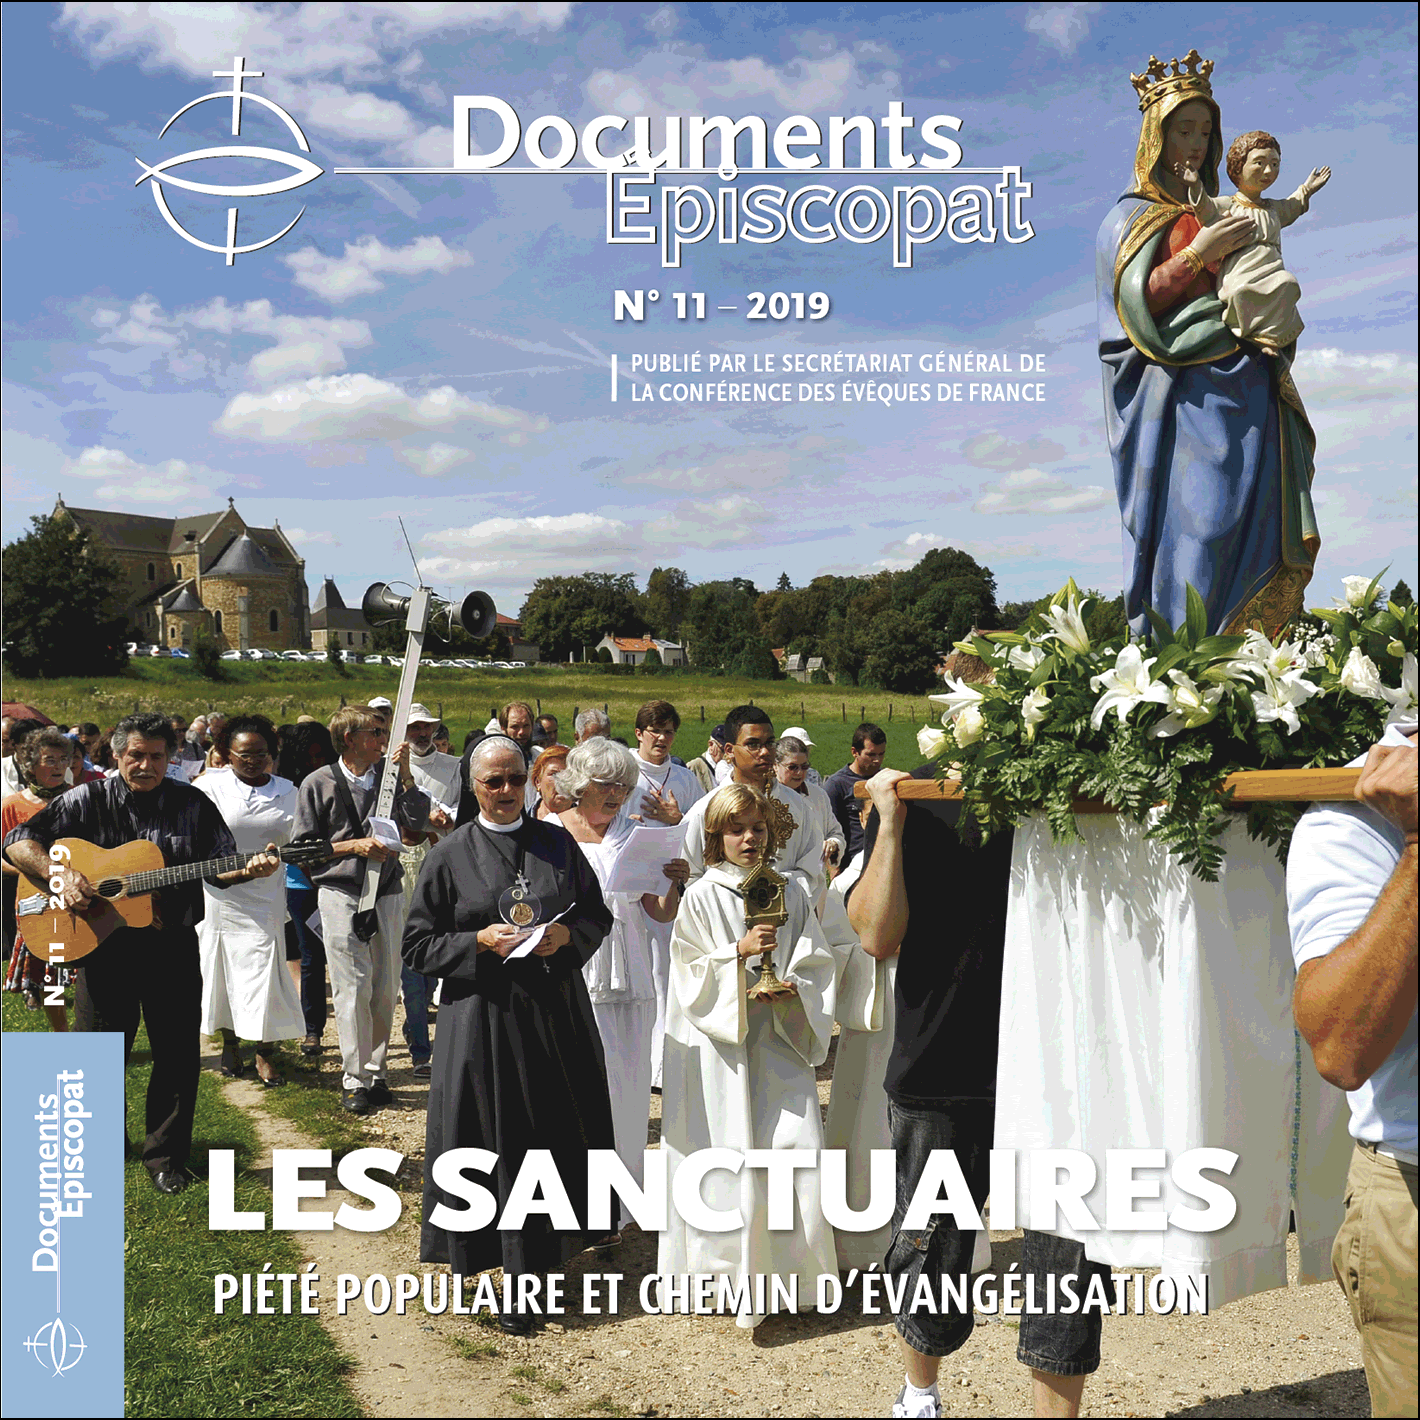 "Les Sanctuaires", capture @ Documents Episcopat, juillet 2020